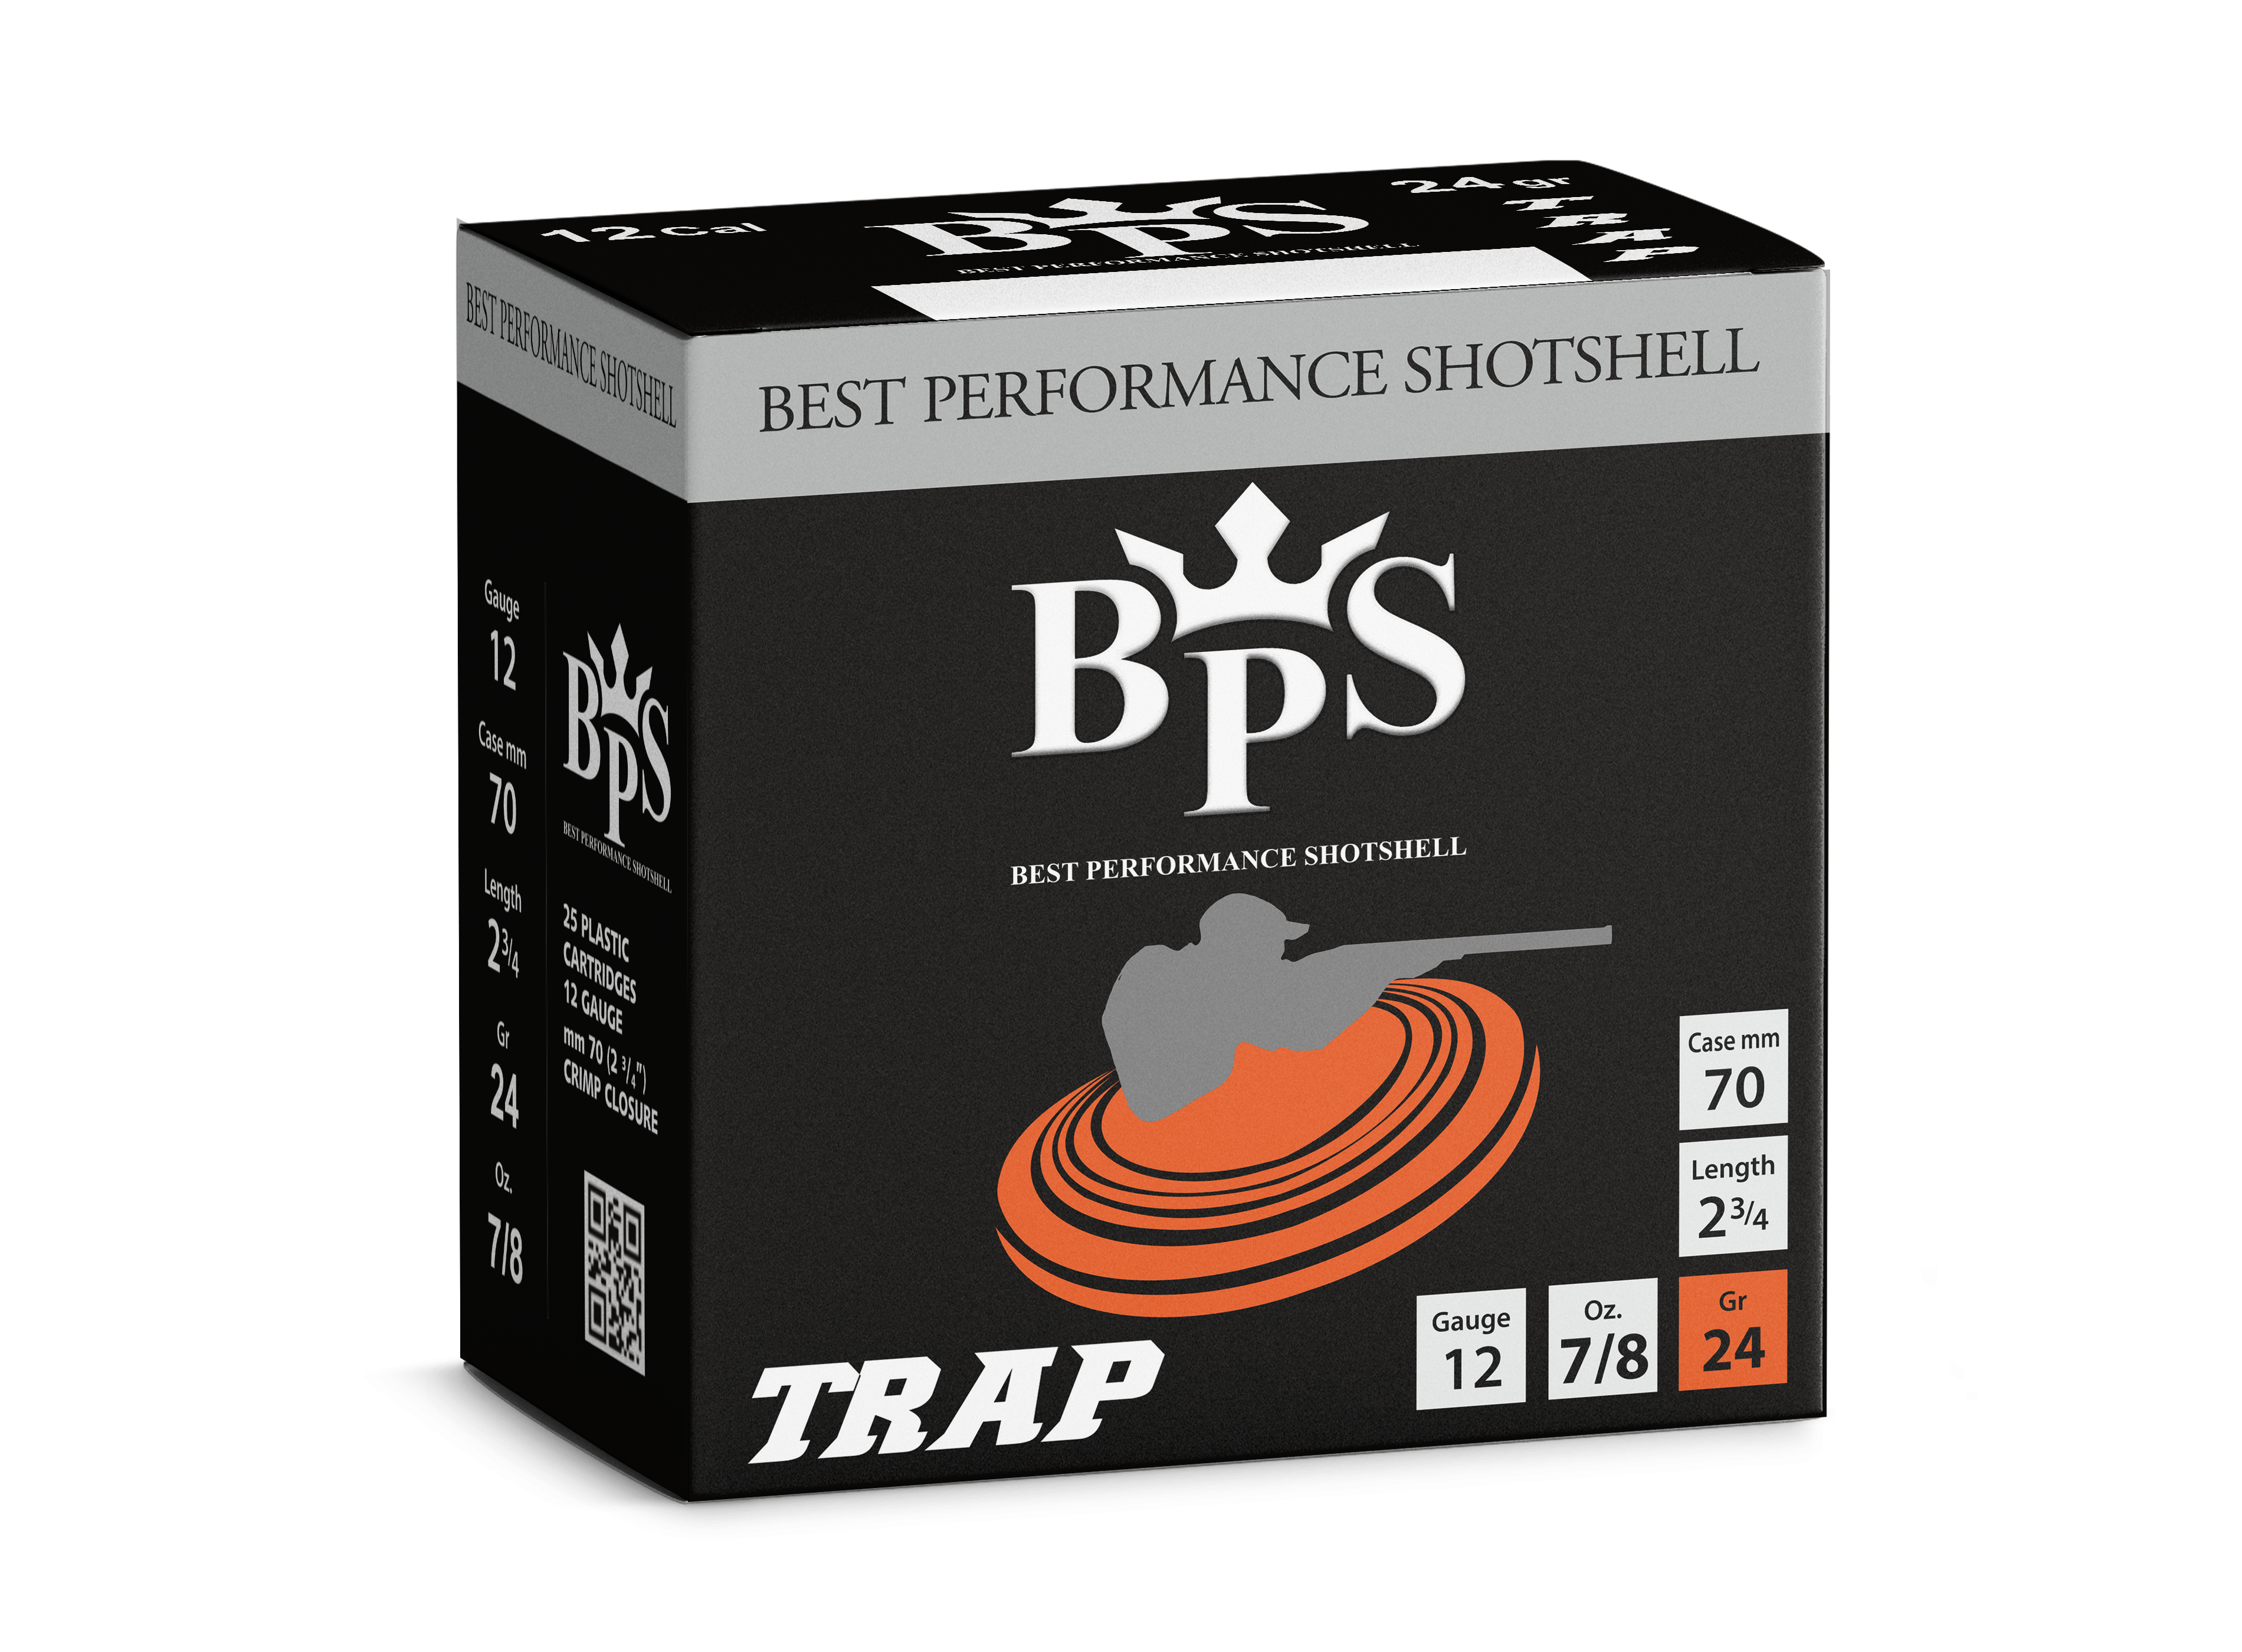 BPS Trap Shotshell